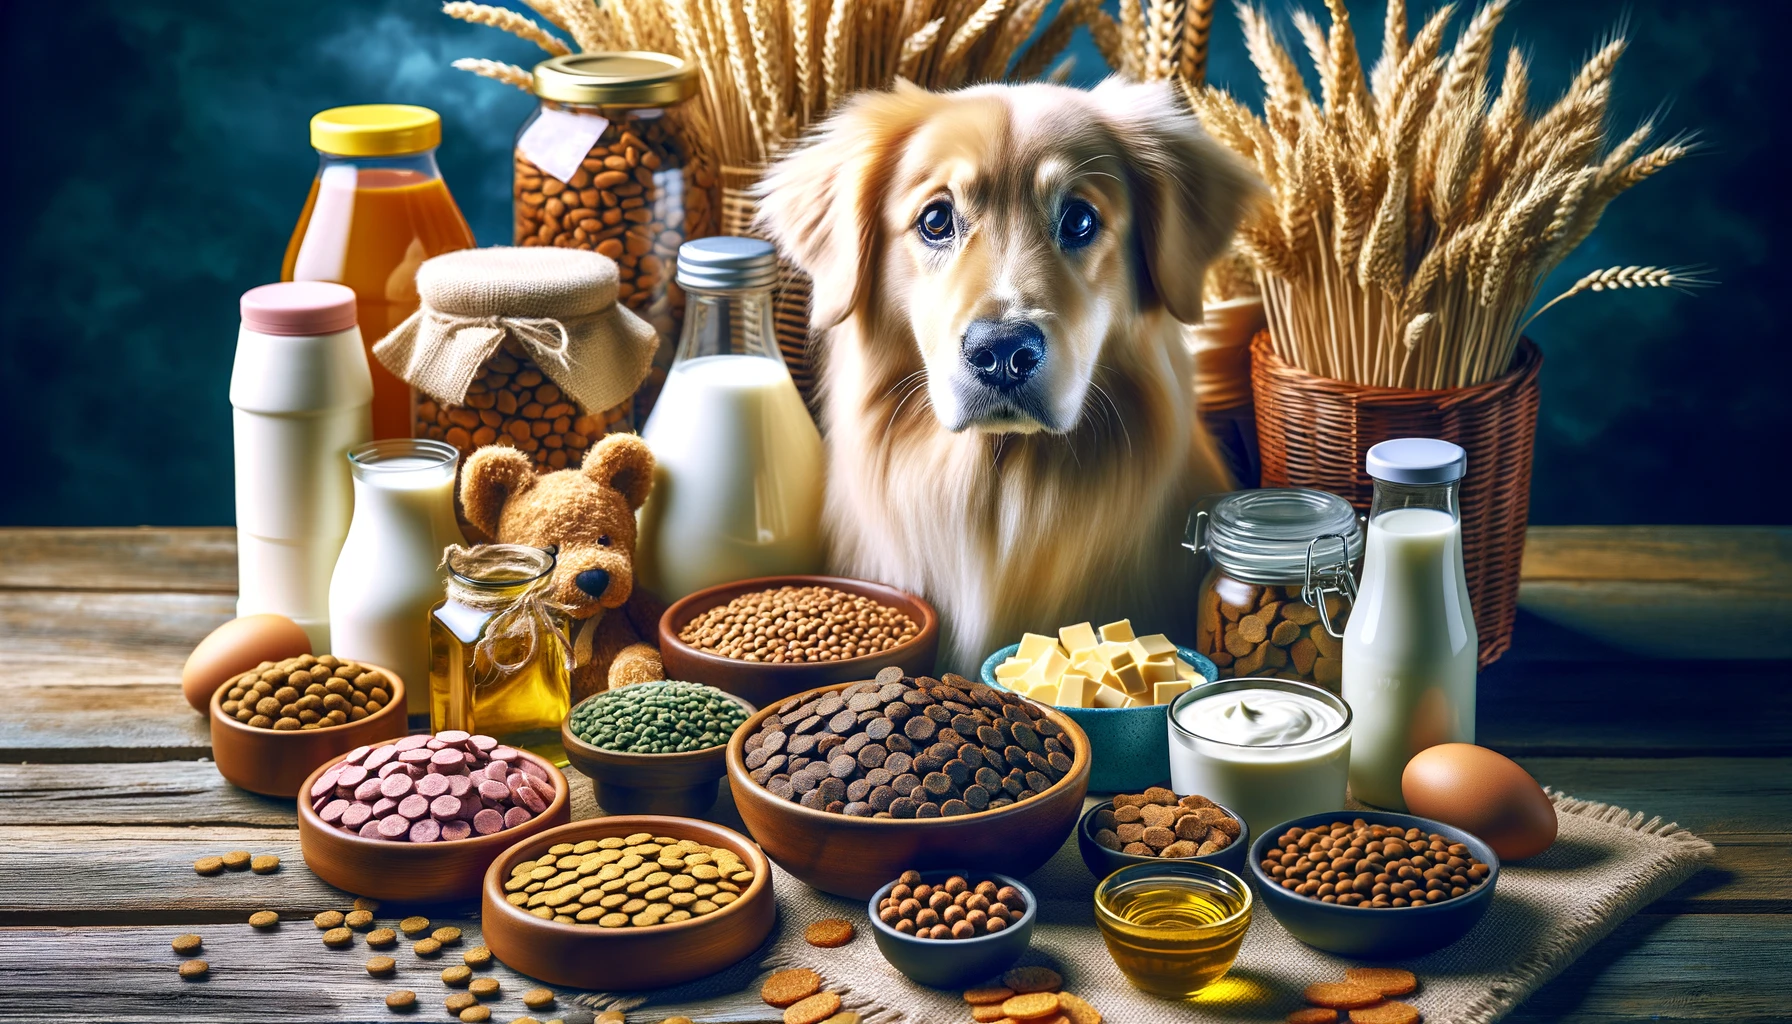 小麦、大豆、乳製品など、犬の涙やけの潜在的な原因として知られるドッグフードの詰め合わせです。